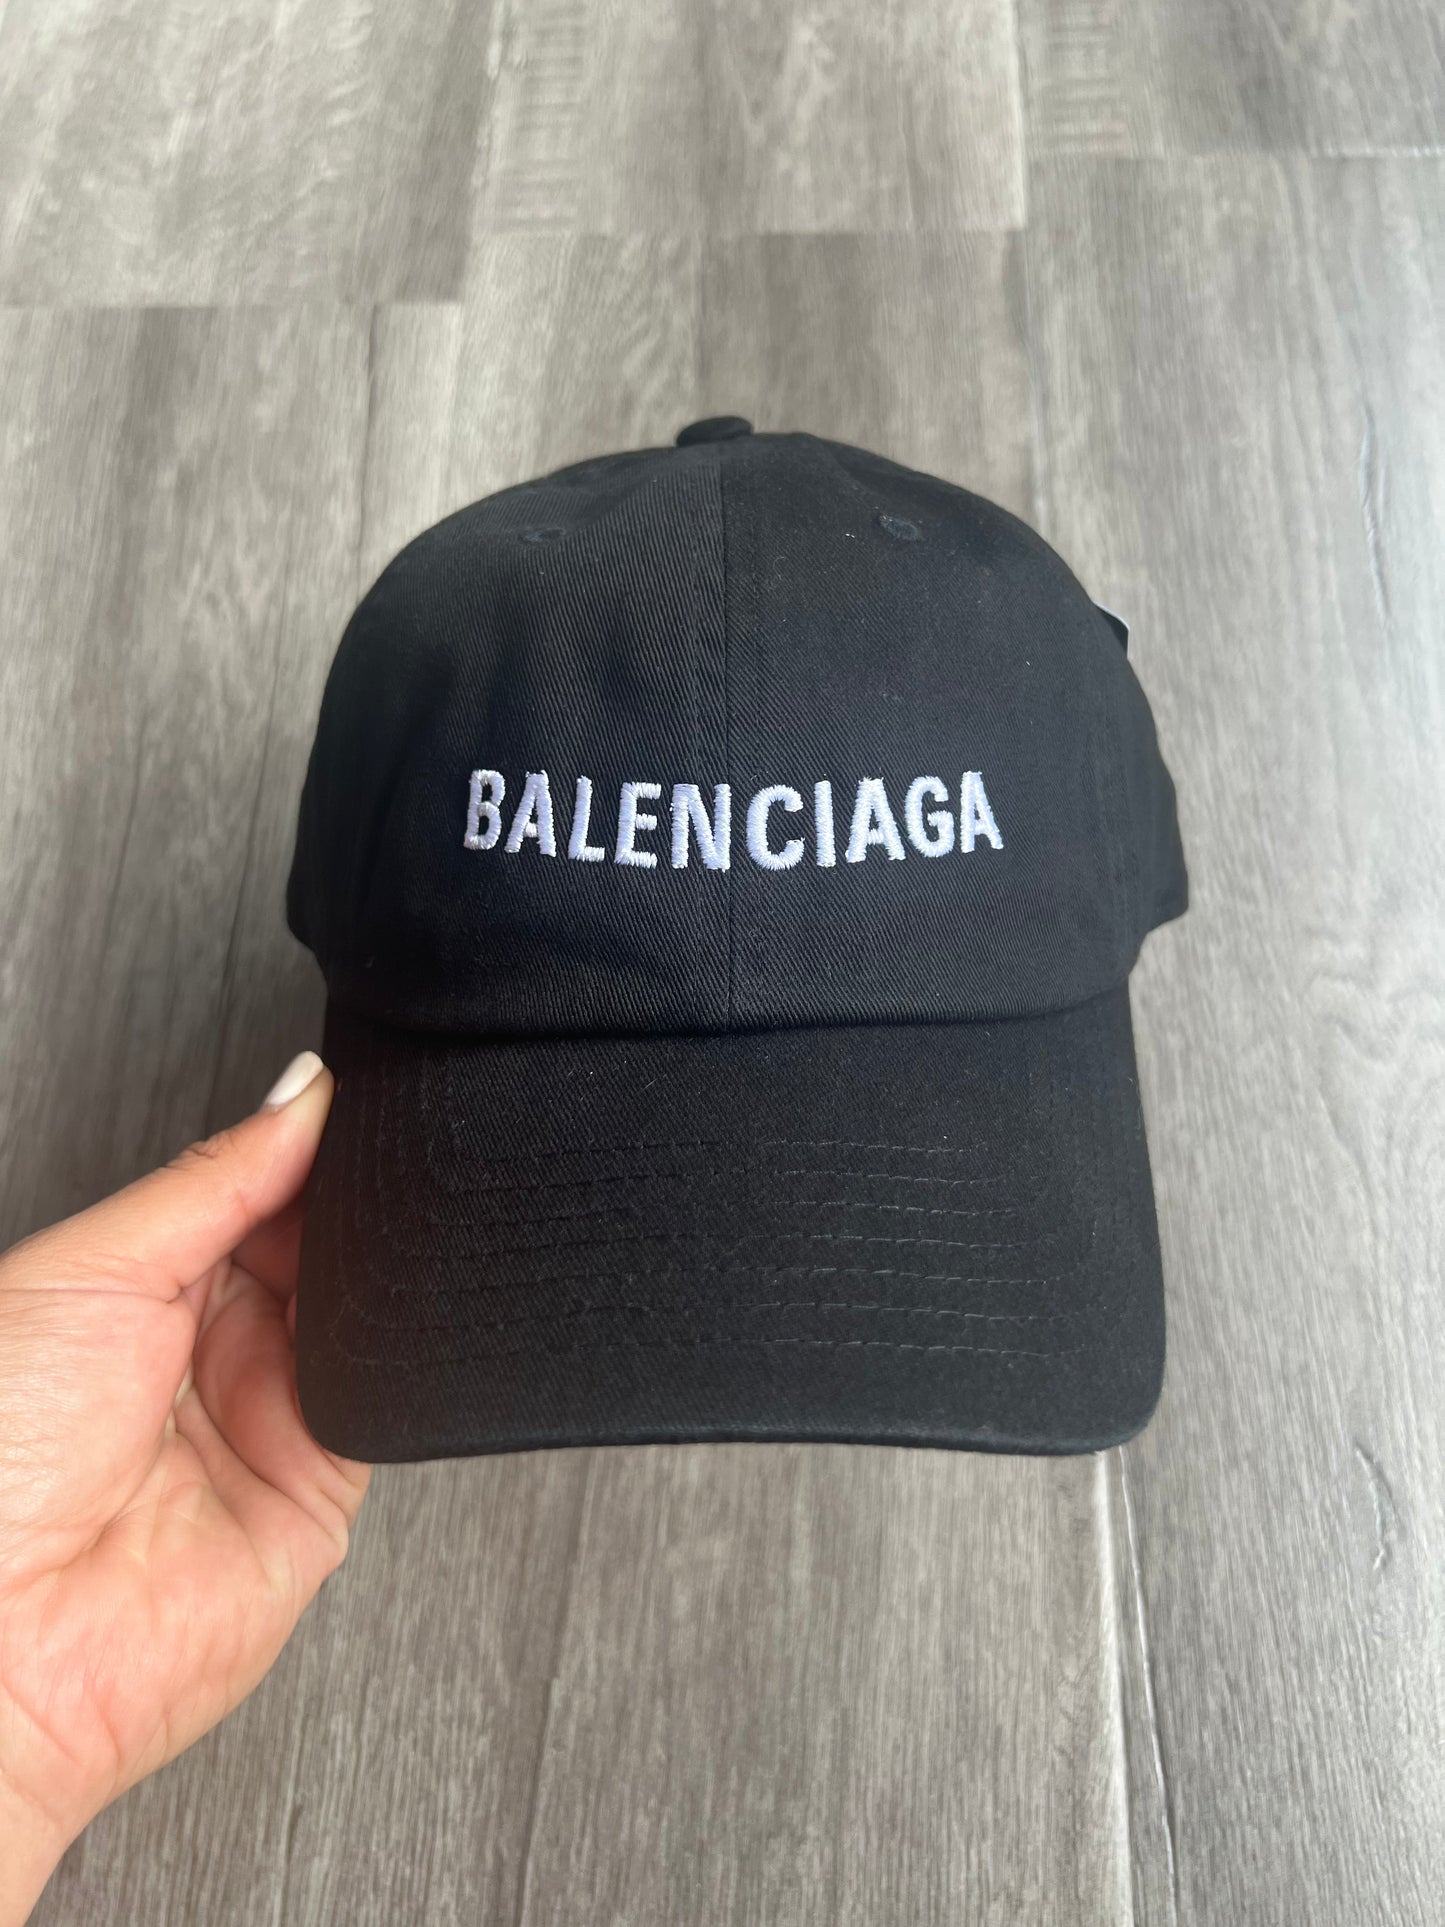 Balenciaga inspired